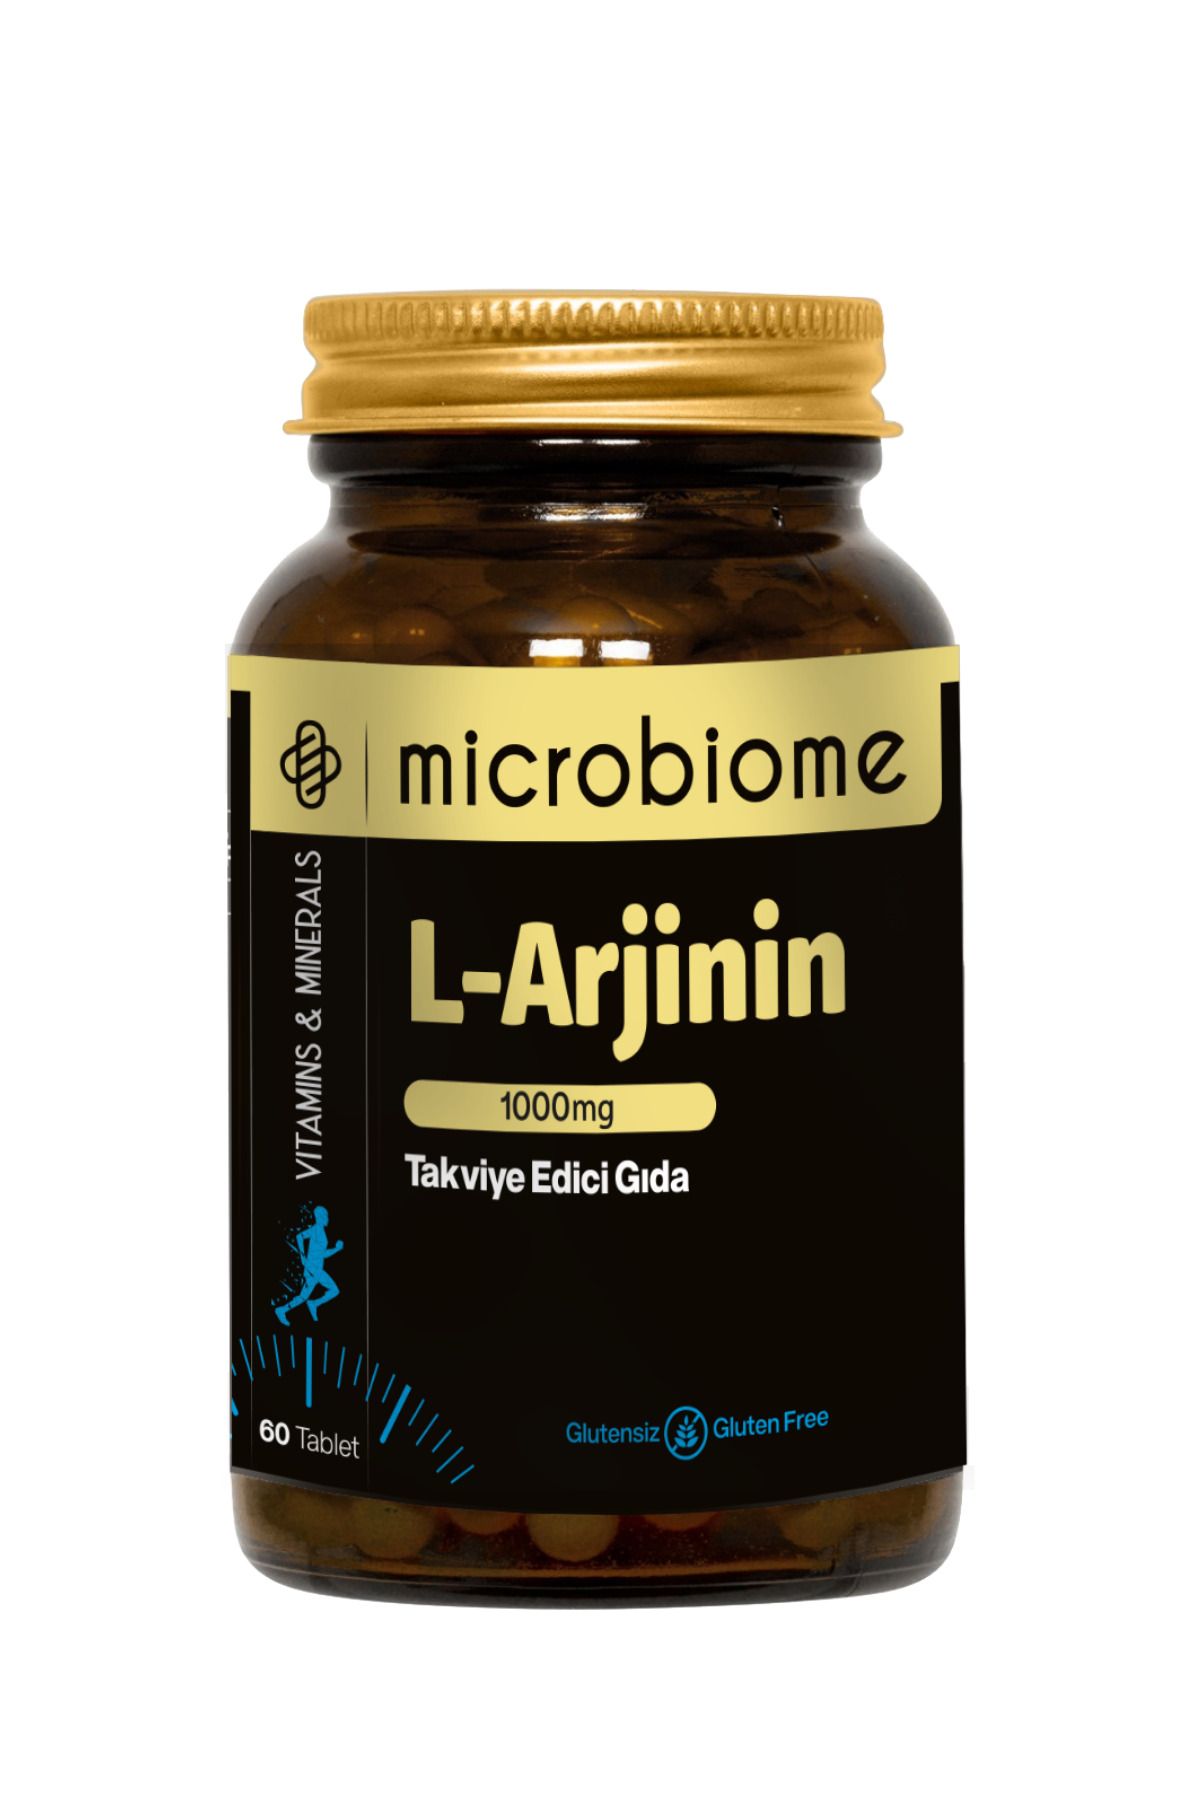 Microbiome L-arjinin 1000 Mg 60 Tablet ( L-arginine )